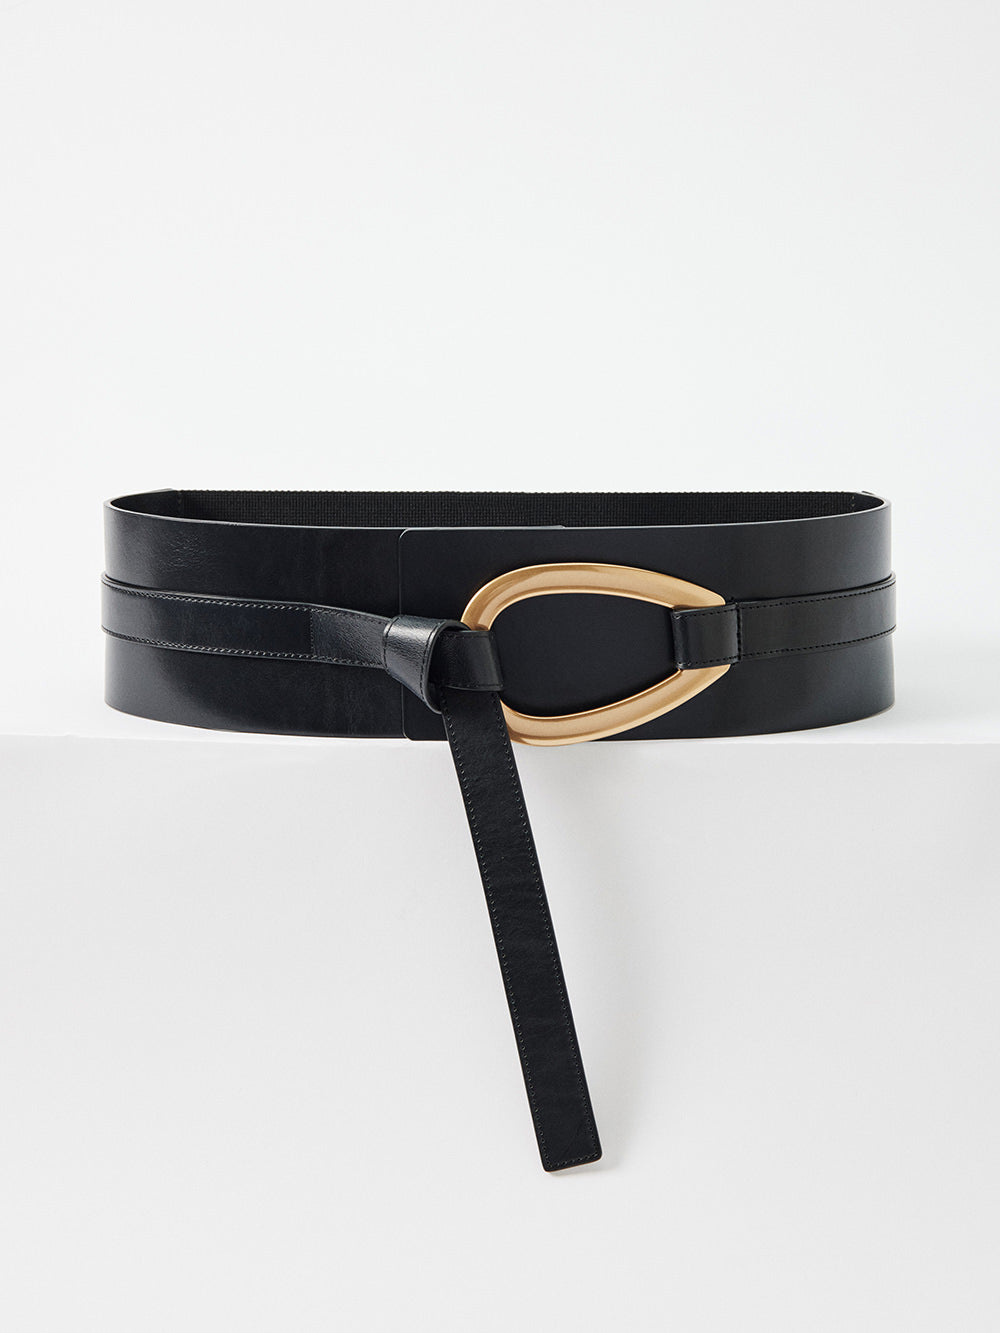 The Feature Buckle Waist Belt